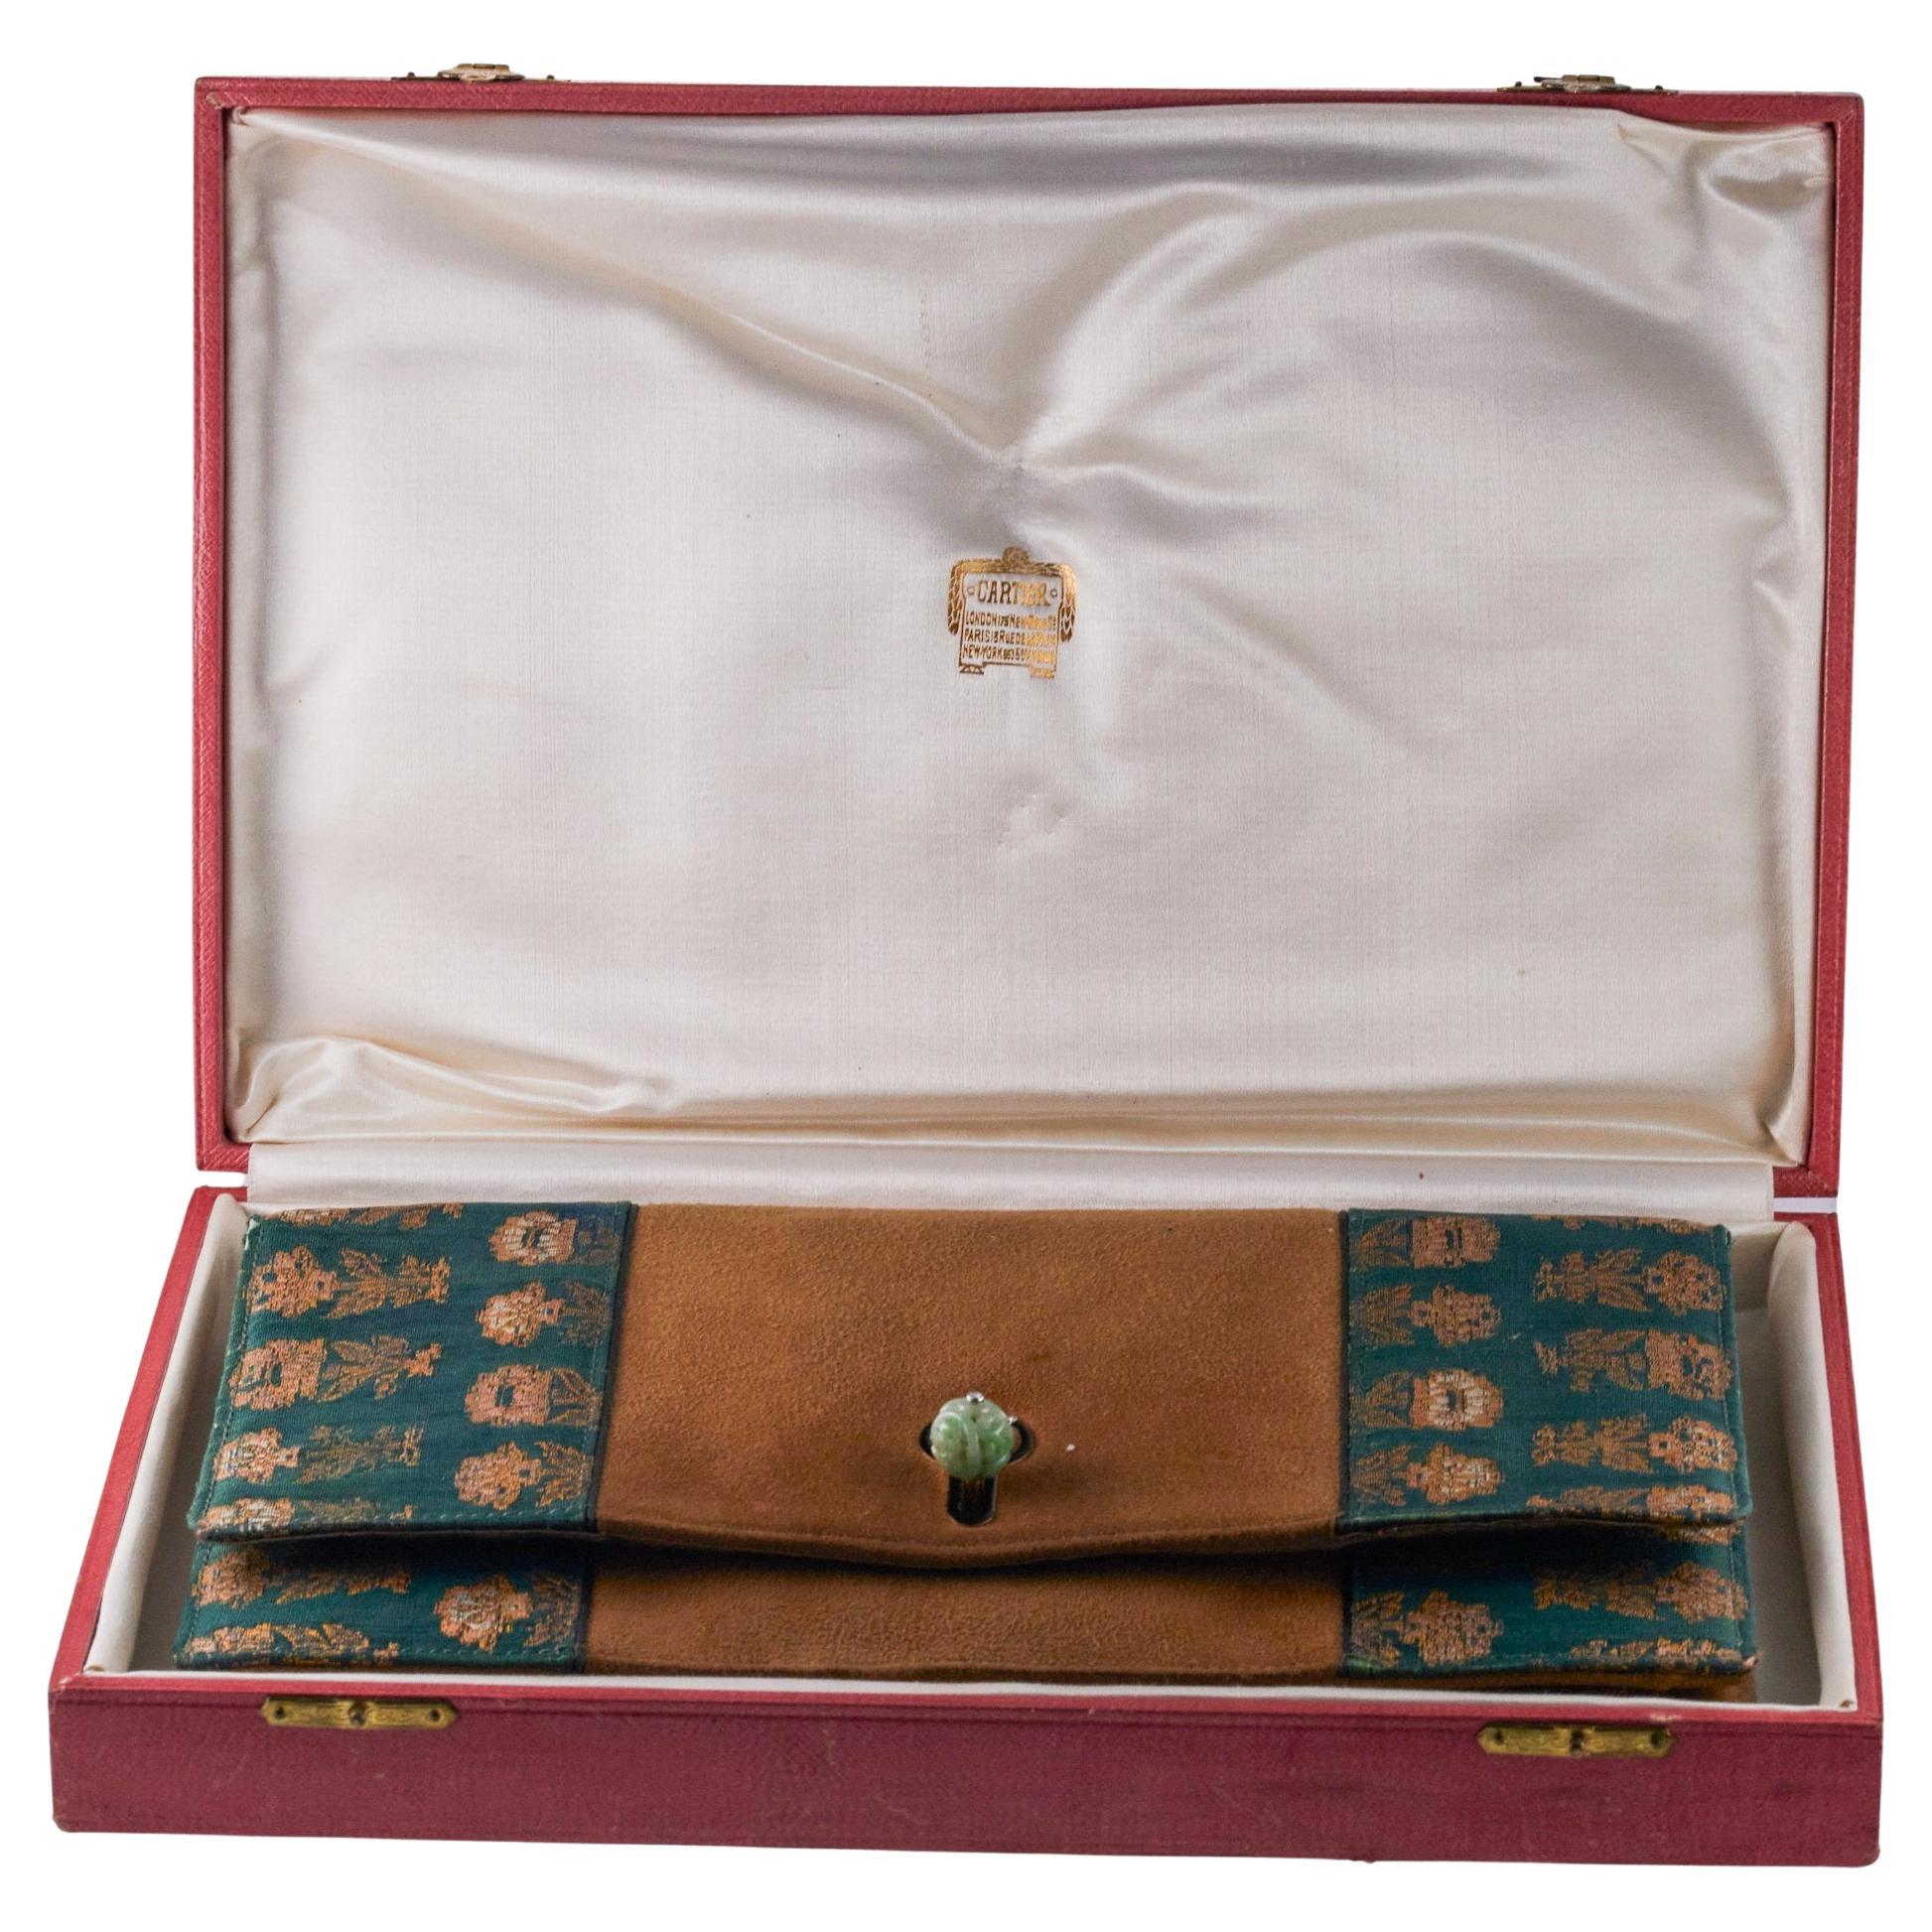 Art Deco Cartier Damenhandtasche aus Wildleder mit Stoffbesatz. Die Tasche ist mit einer Innenausstattung aus Satin versehen, mit mehreren Fächern, einem Kompaktspiegel und zwei kleinen Umschlagtaschen (abnehmbar).  Mit geschnitzter Jade und